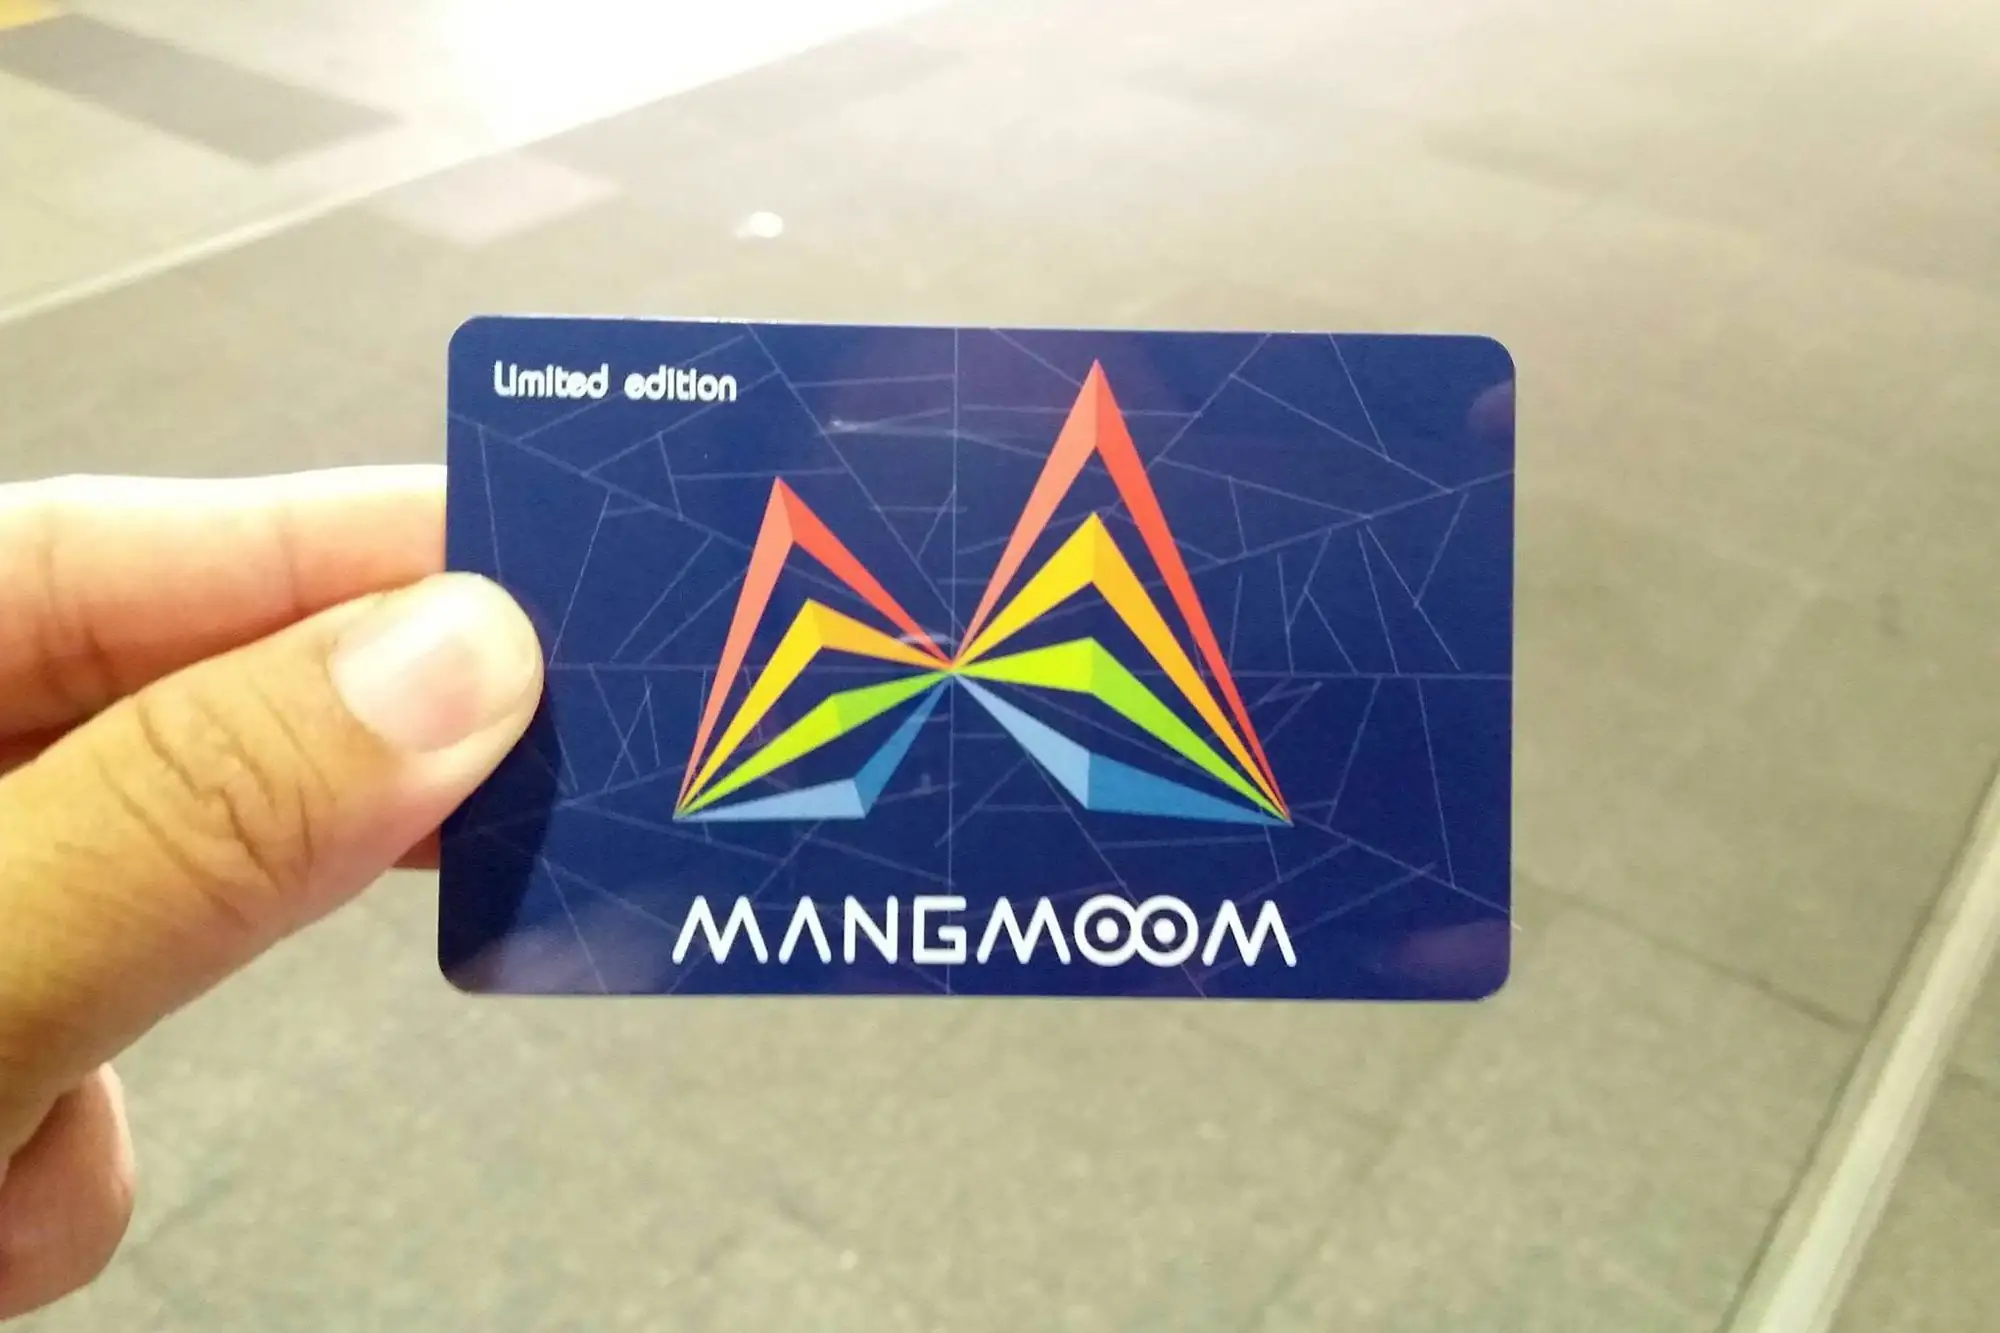 泰國大眾捷運局 Mangmoom card 曼谷蜘蛛卡 曼谷地鐵 MRT Spider Card